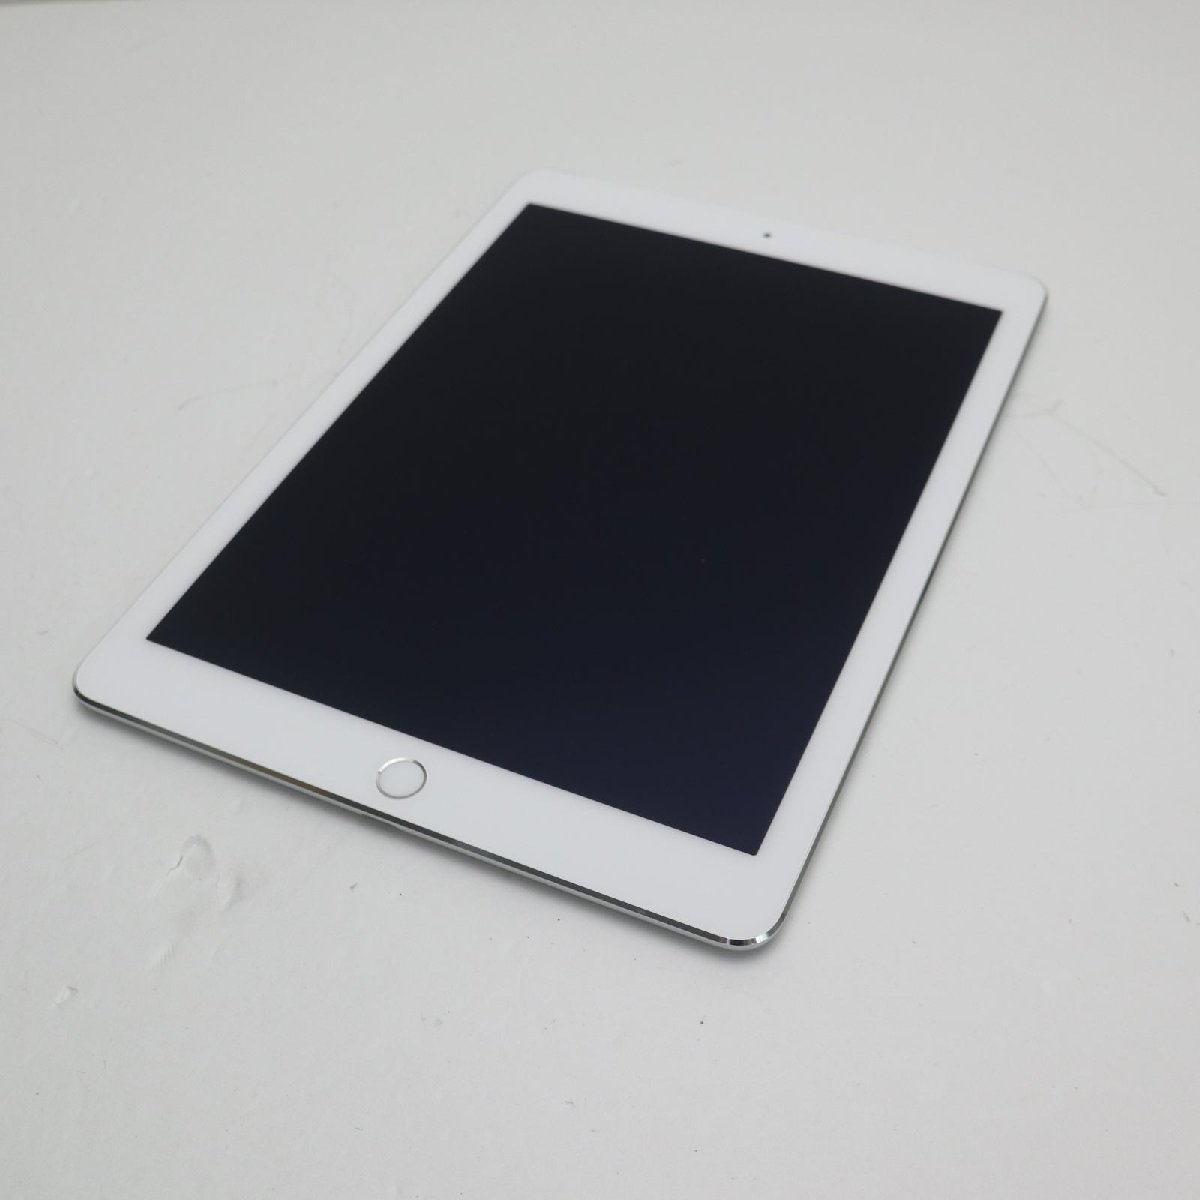 超美品 docomo iPad Air 2 Cellular 32GB シルバー 即日発送 タブレットApple 本体 あすつく 土日祝発送OK